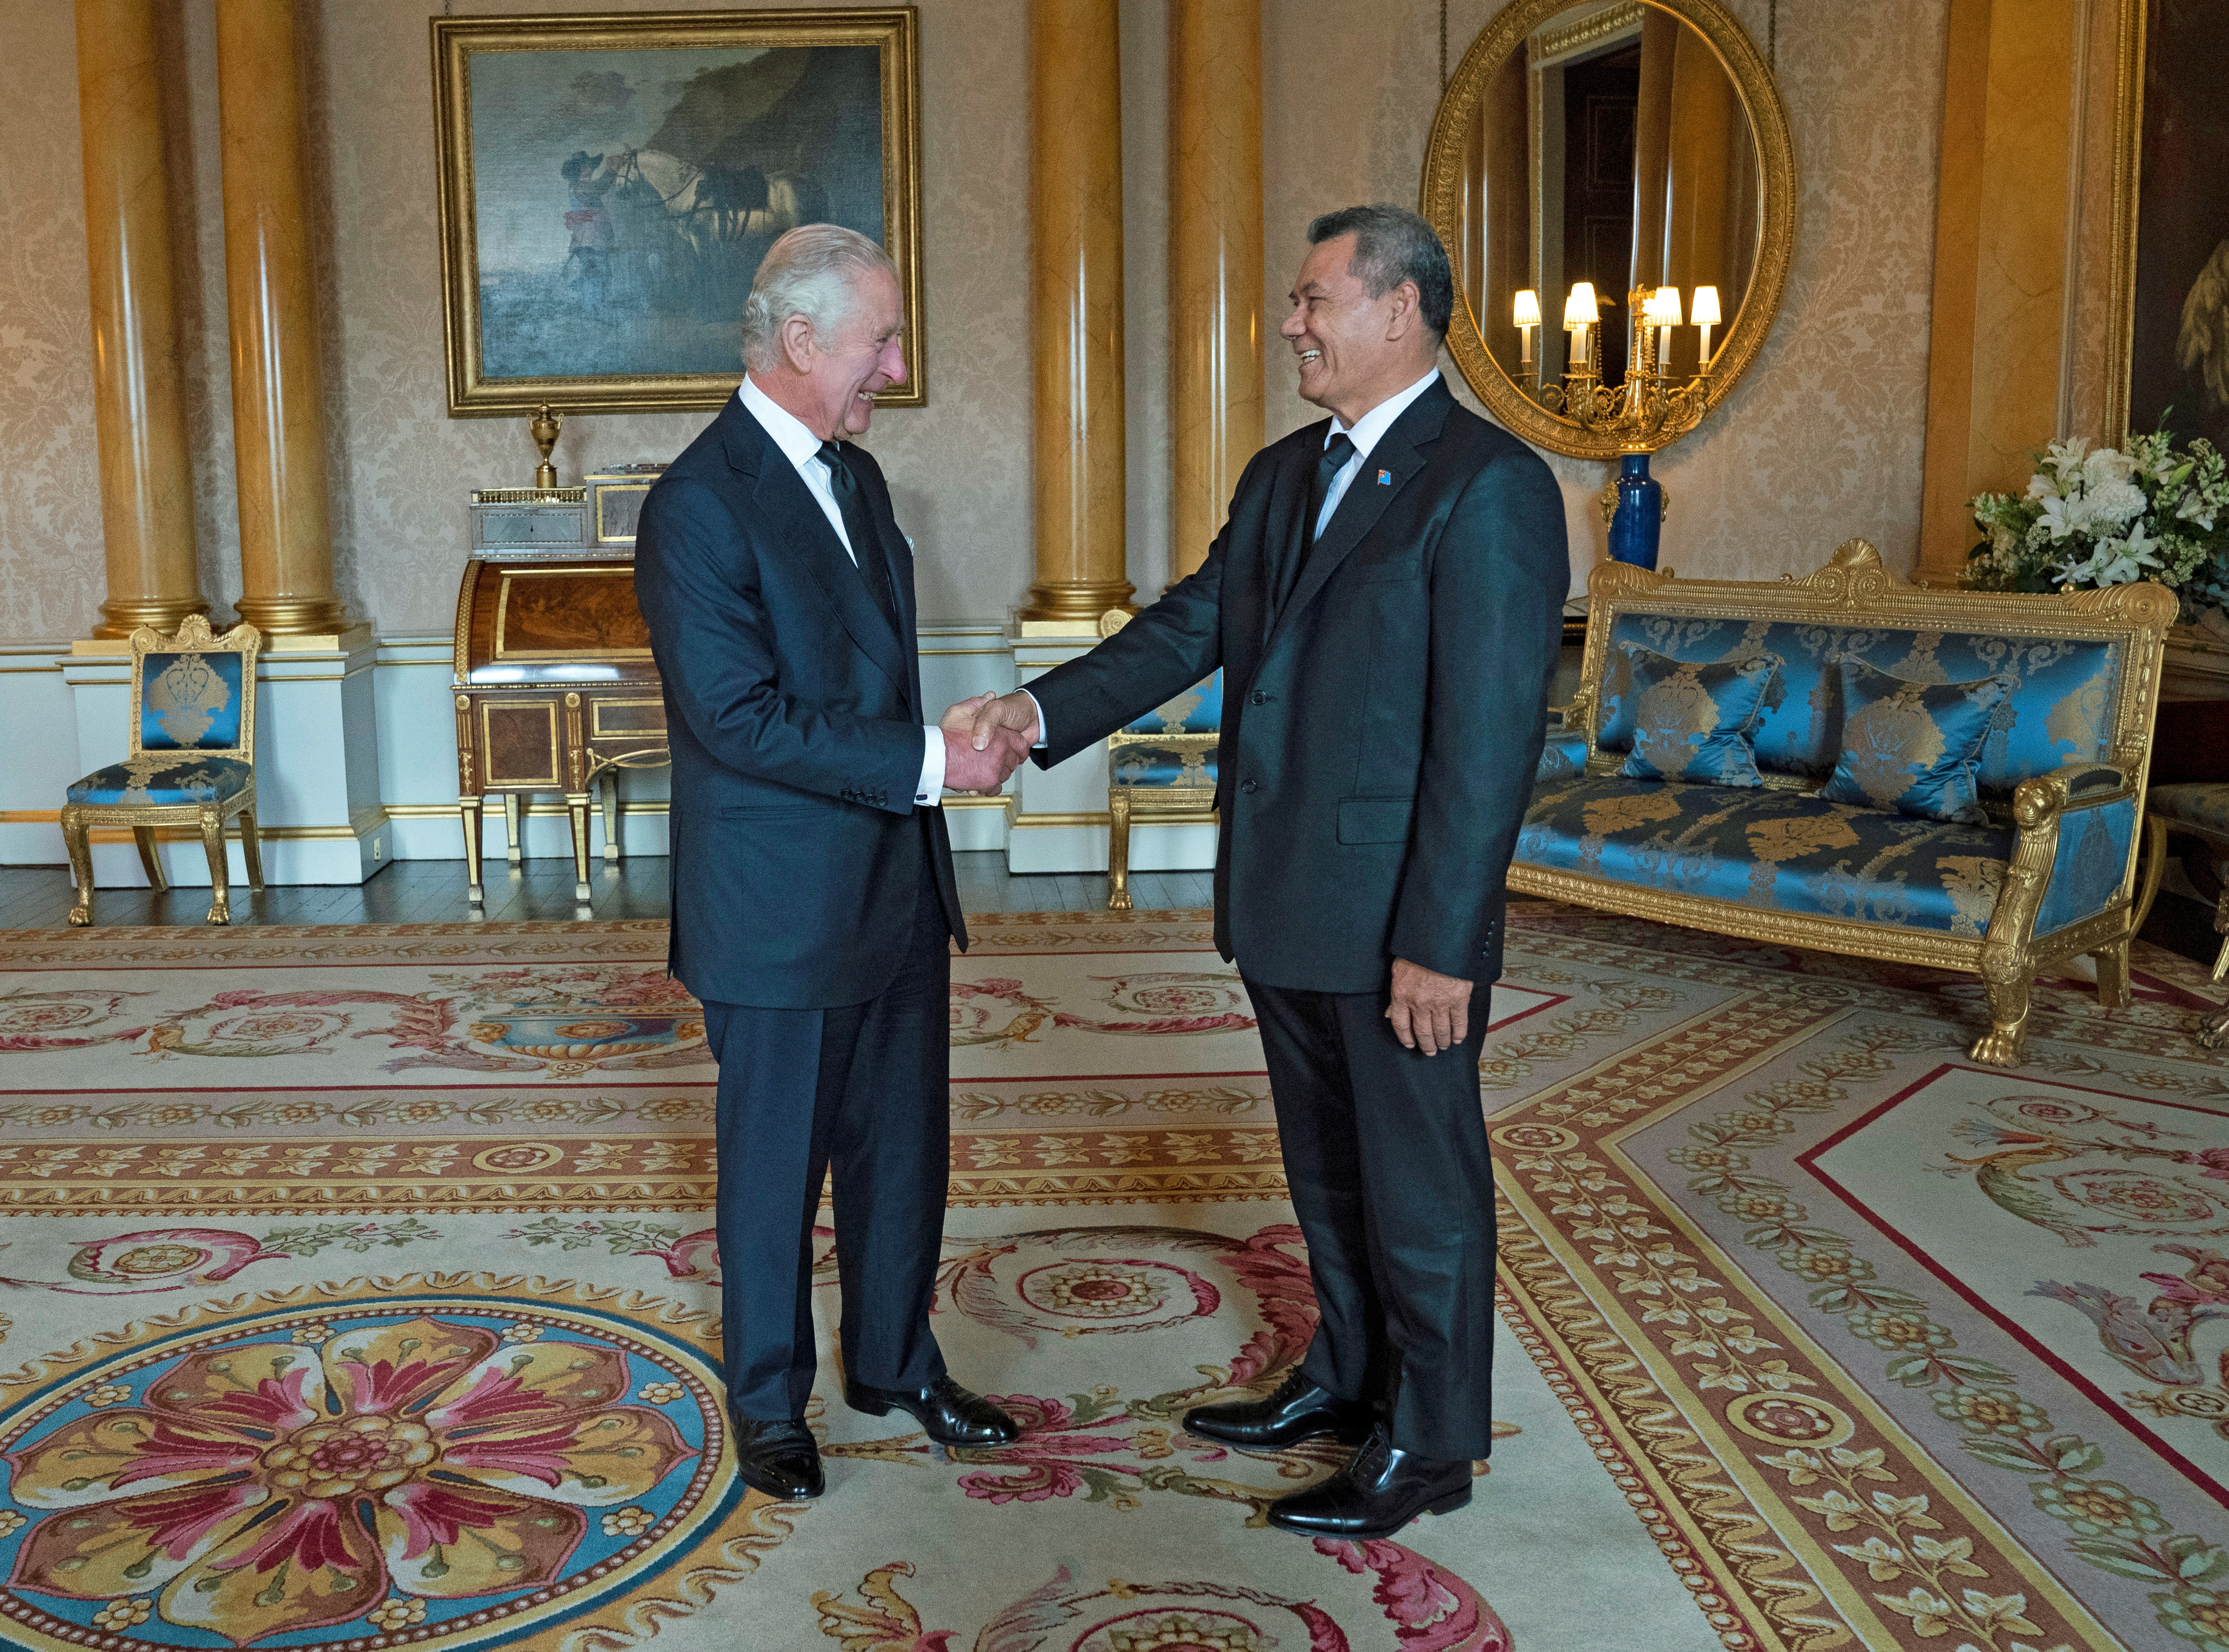 El rey Carlos III con el primer ministro de Tuvalu Kausea Natano mientras recibe a los primeros ministros del reino en la Sala 1844 del Palacio de Buckingham en Londres. Domingo 18 de septiembre de 2022 (Kirsty O'Connor/Pool via REUTERS)